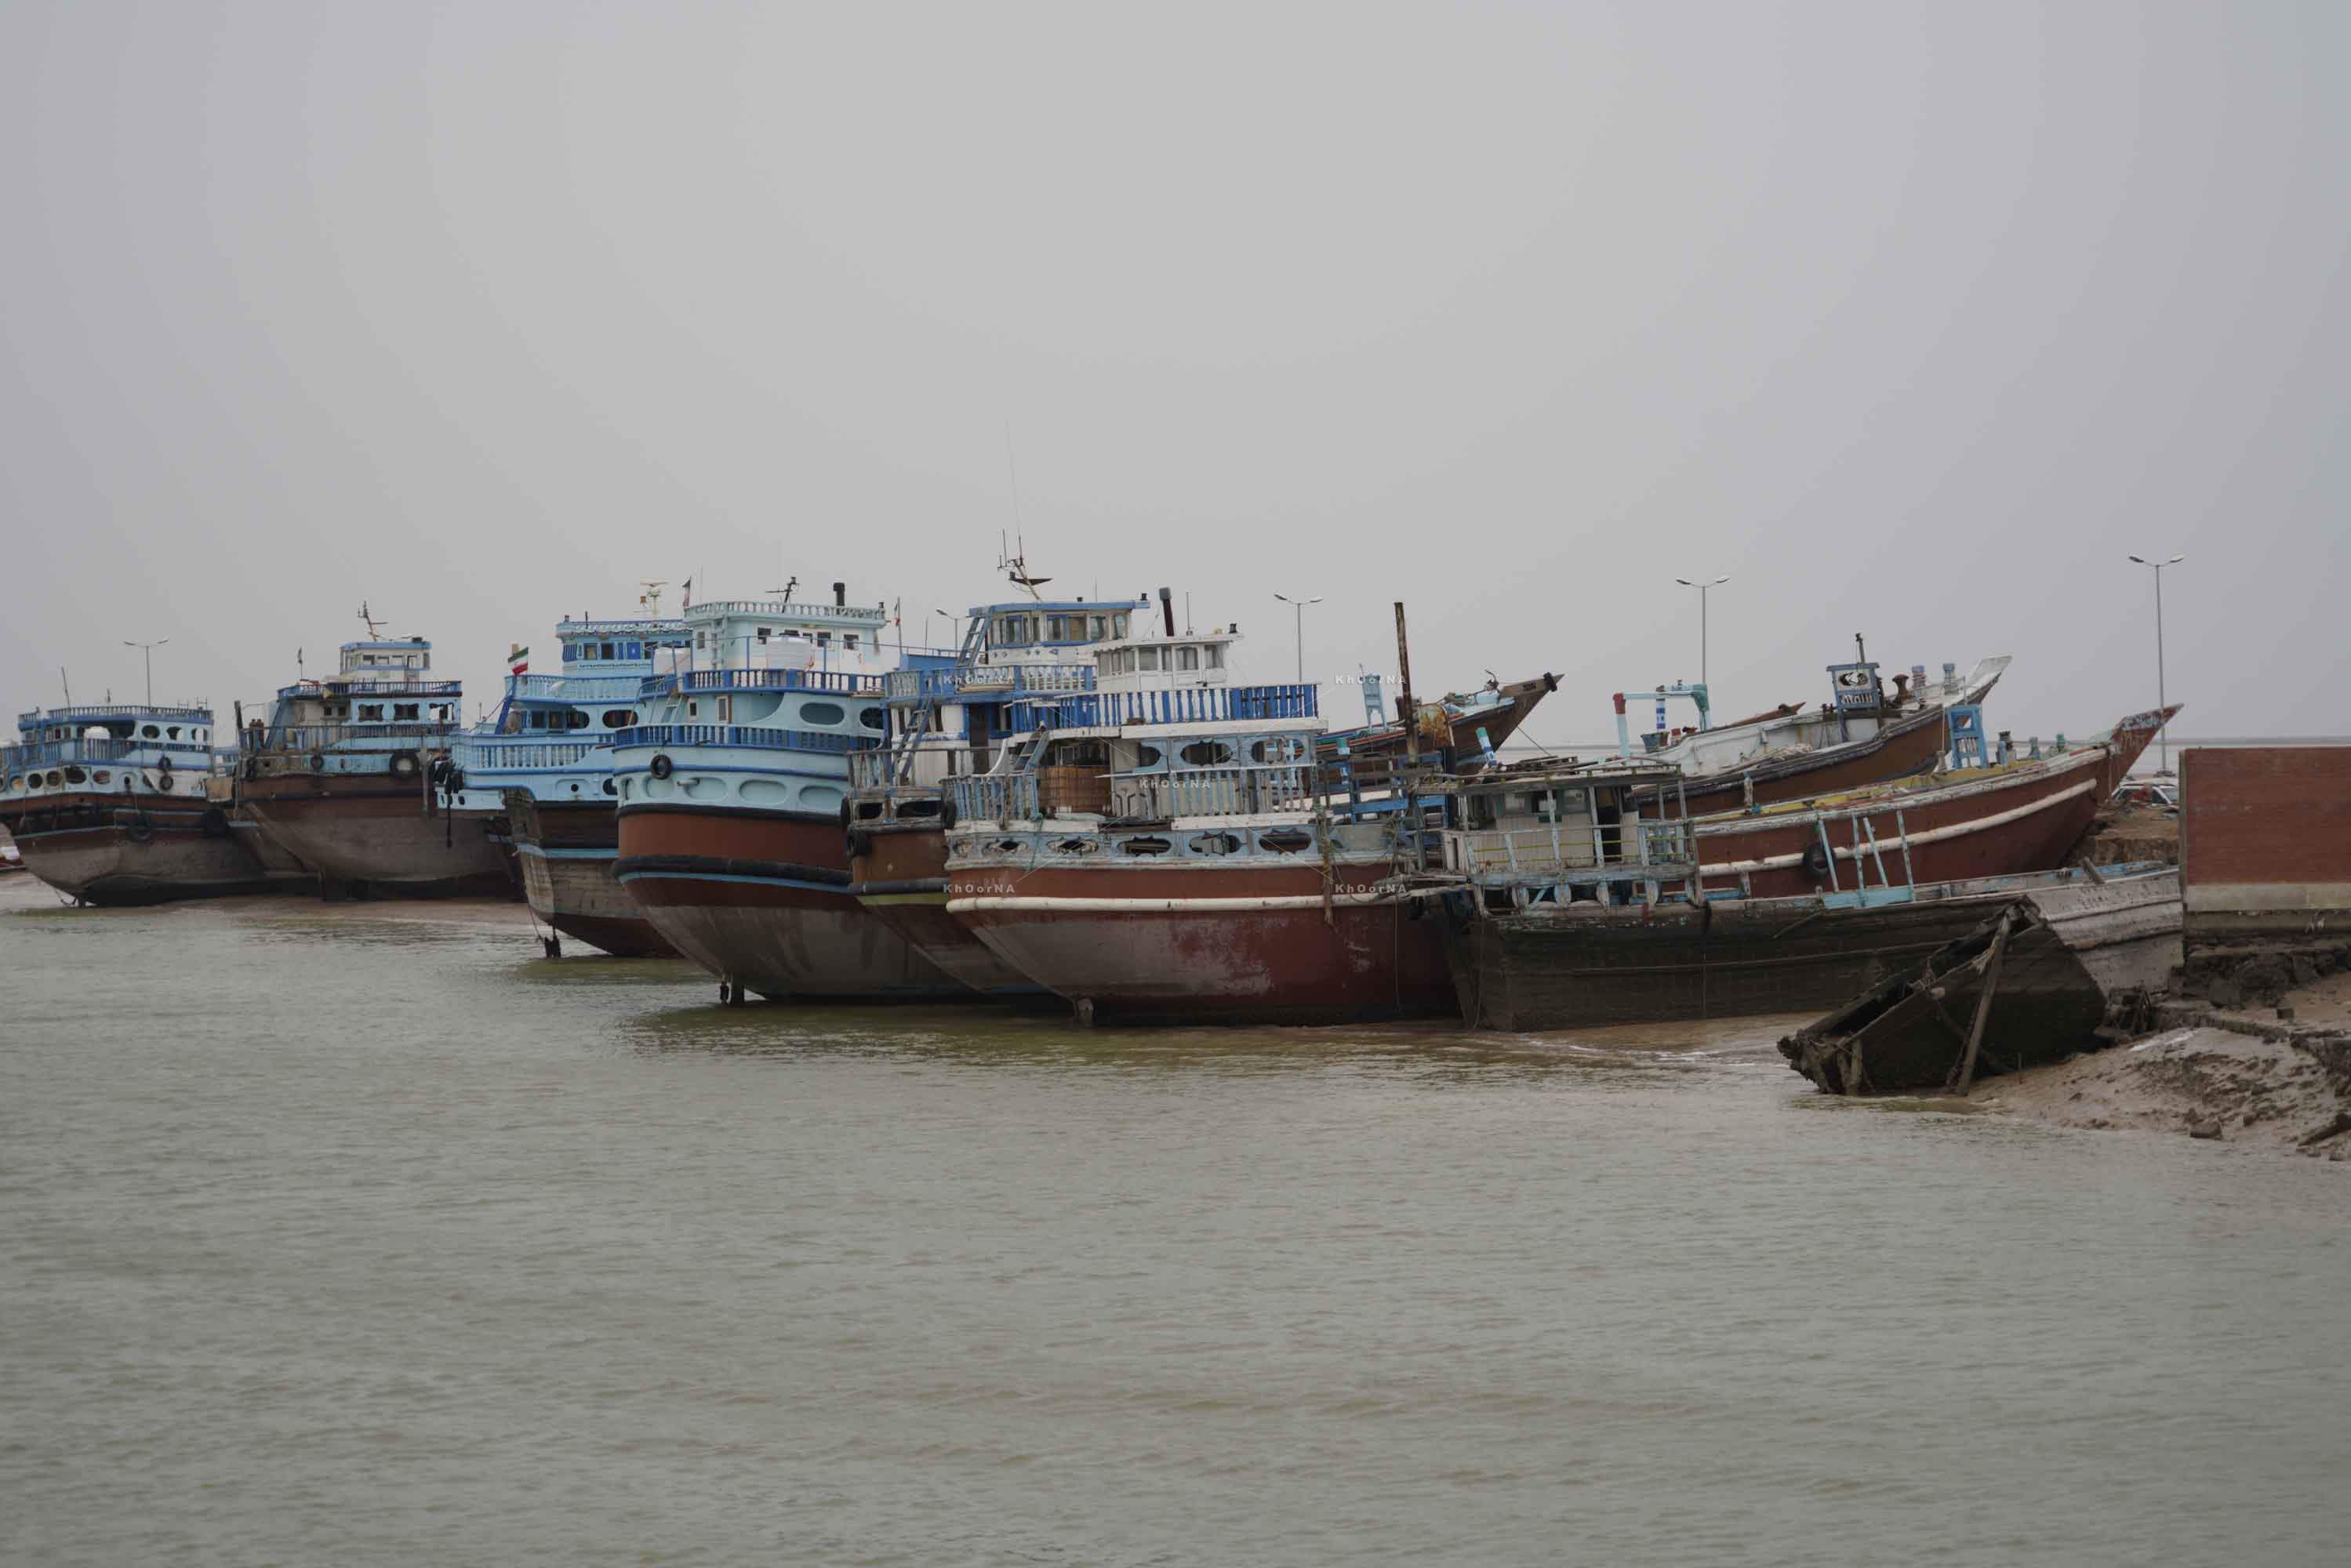 کشف محموله کالای قاچاق در ساحل هندیجان